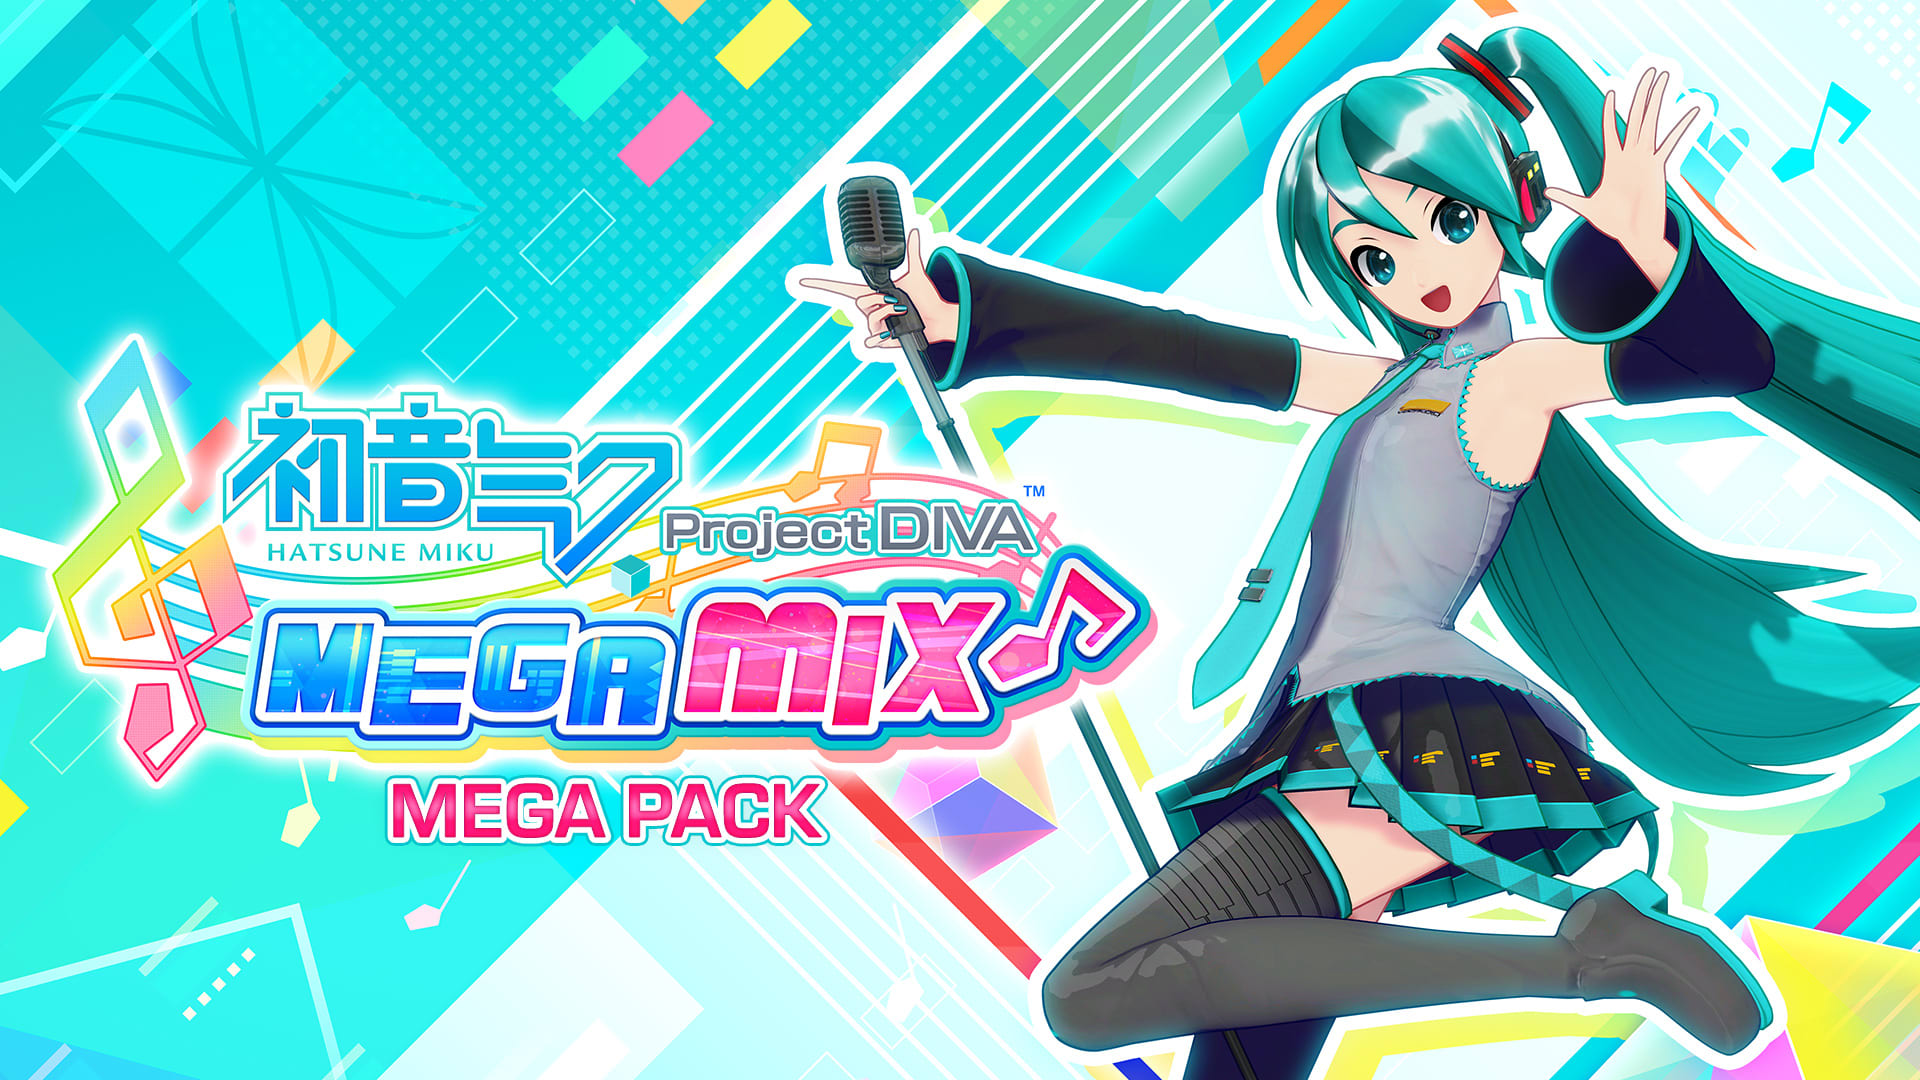 Hatsune Miku: Project DIVA Mega Mix Mega Pack